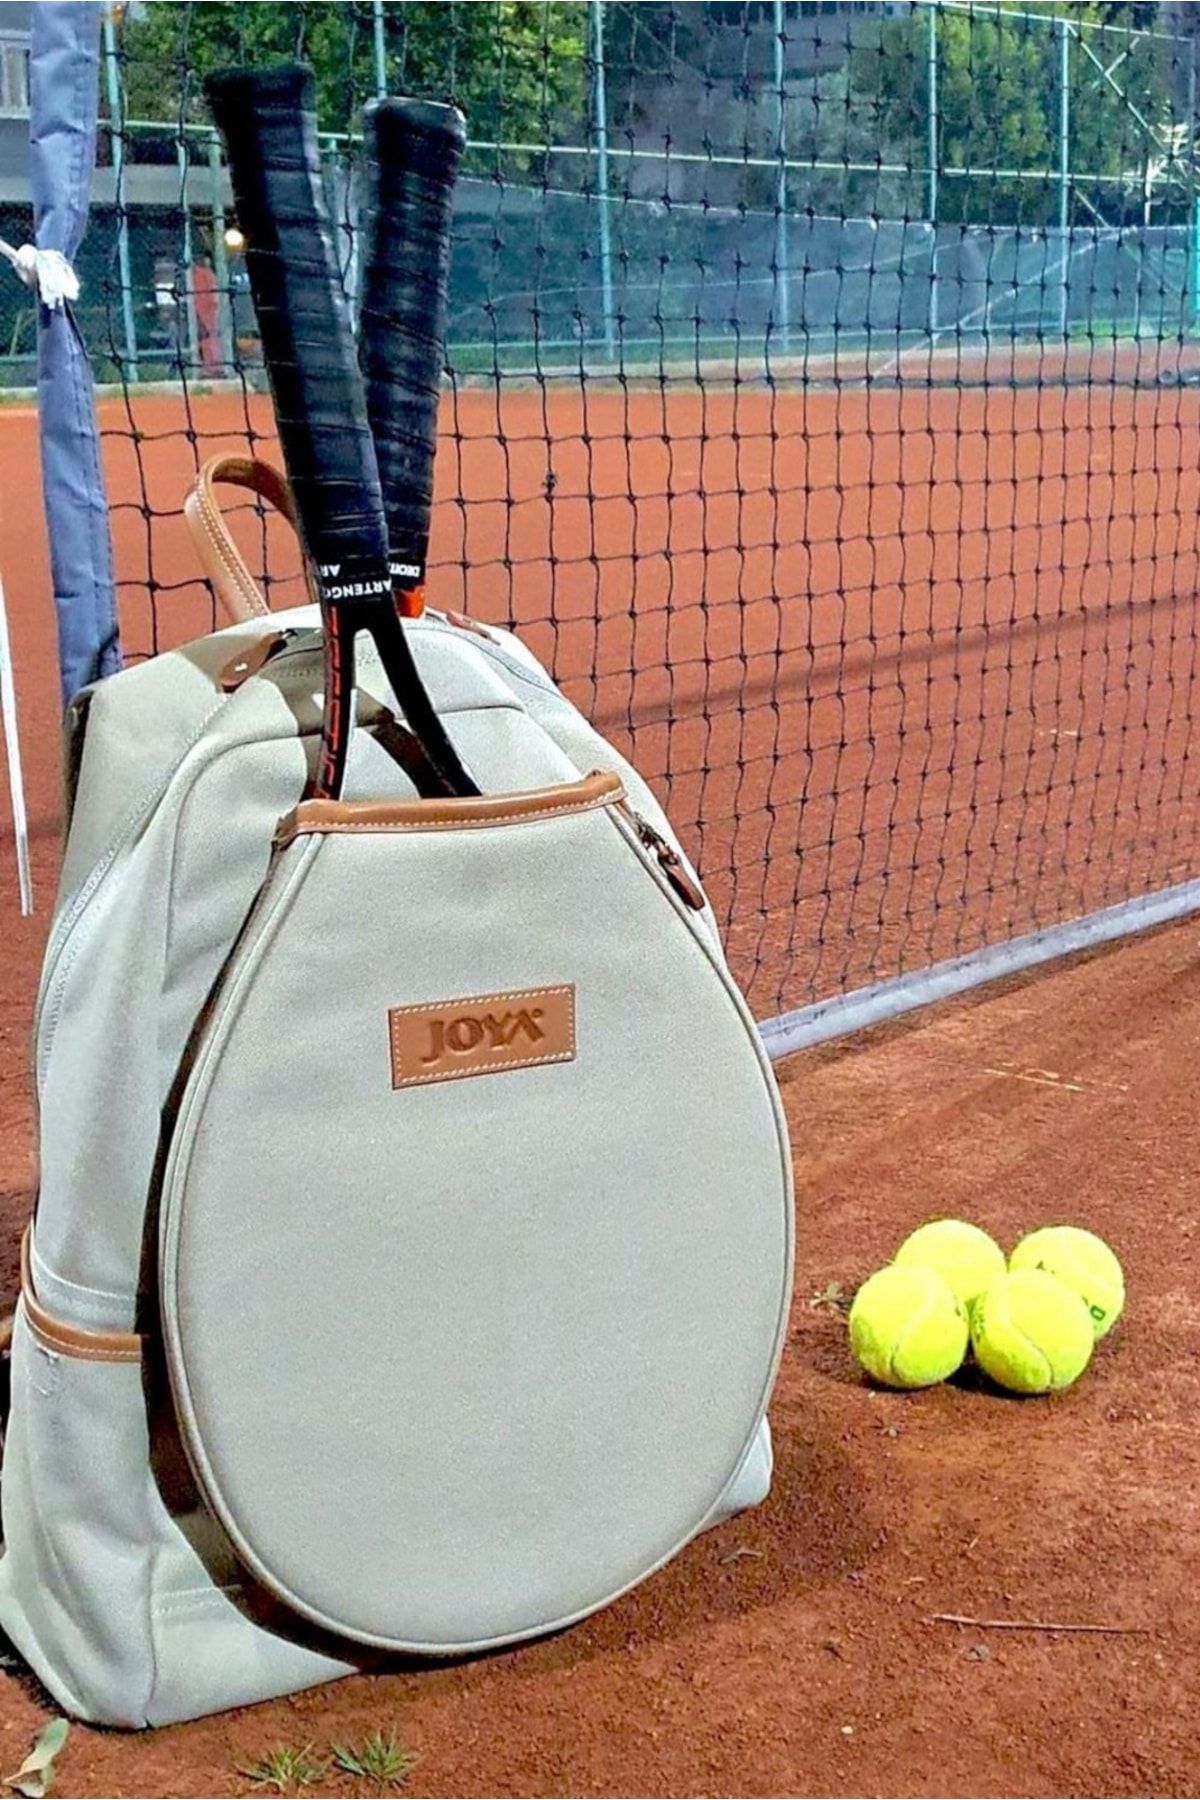 Joya Bpack Tenis Sırt Çantası